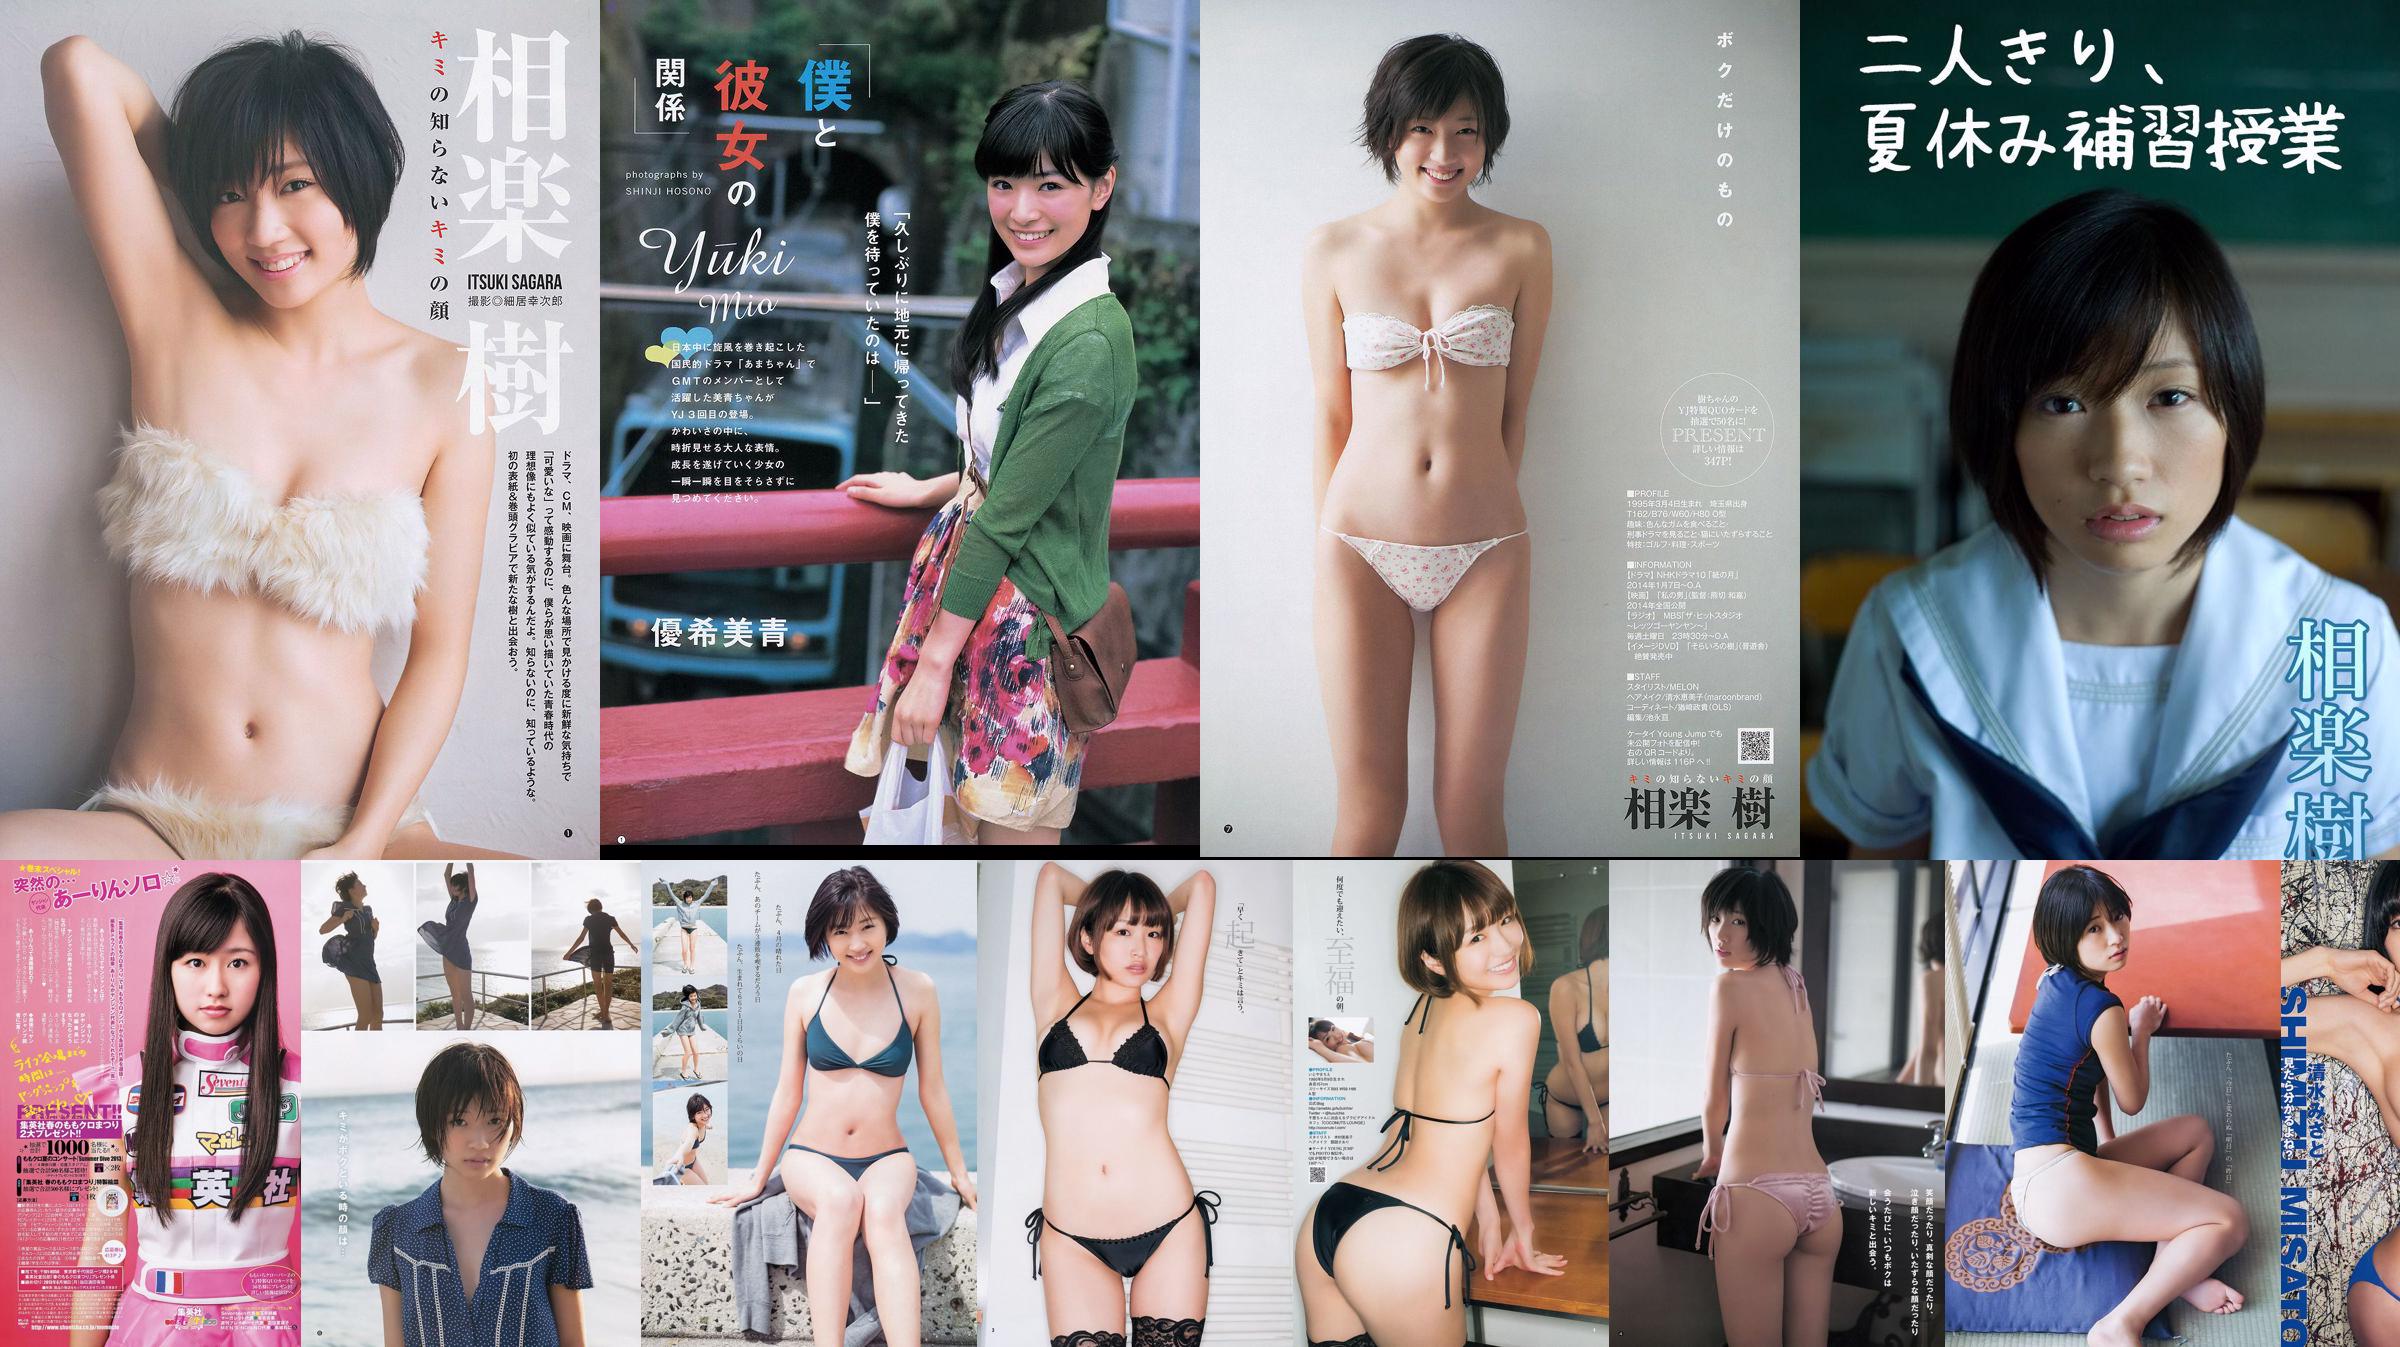 Sagaraki Chie Itoyama Yuki Mio [Weekly Young Jump] 2013 No.50照片 No.3b29b6 第1頁